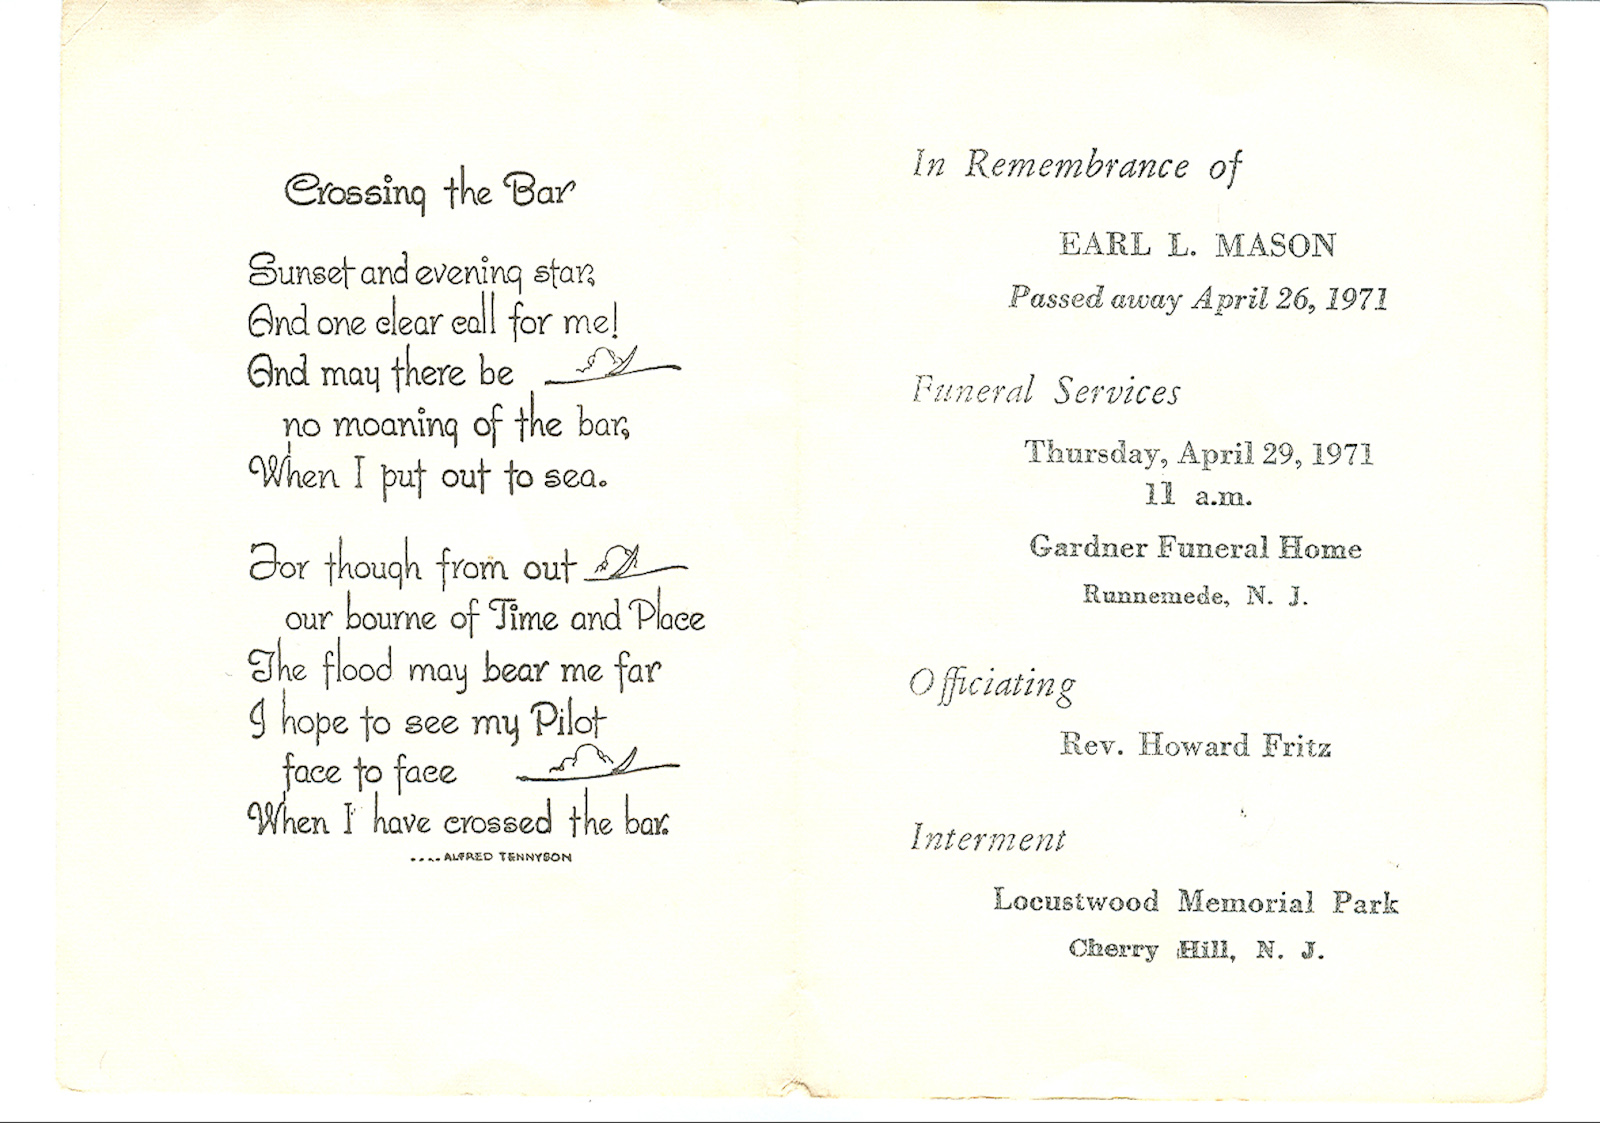 Prayer Card - Earl L Mason